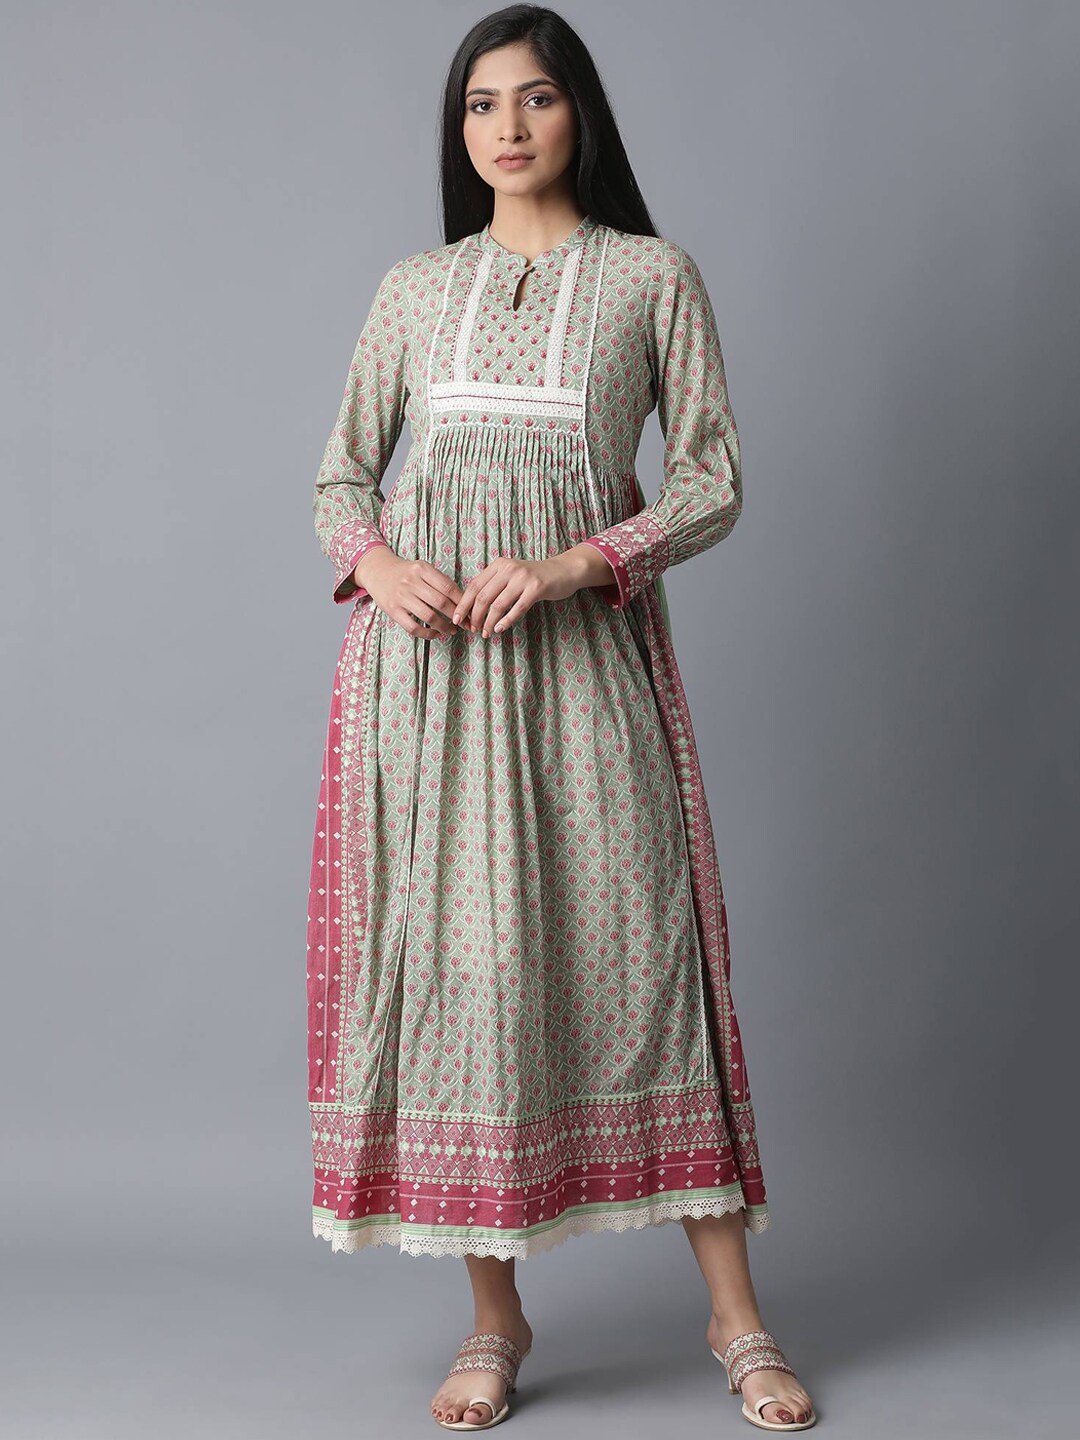 W Women Green Printed Maxi Dress Price in India